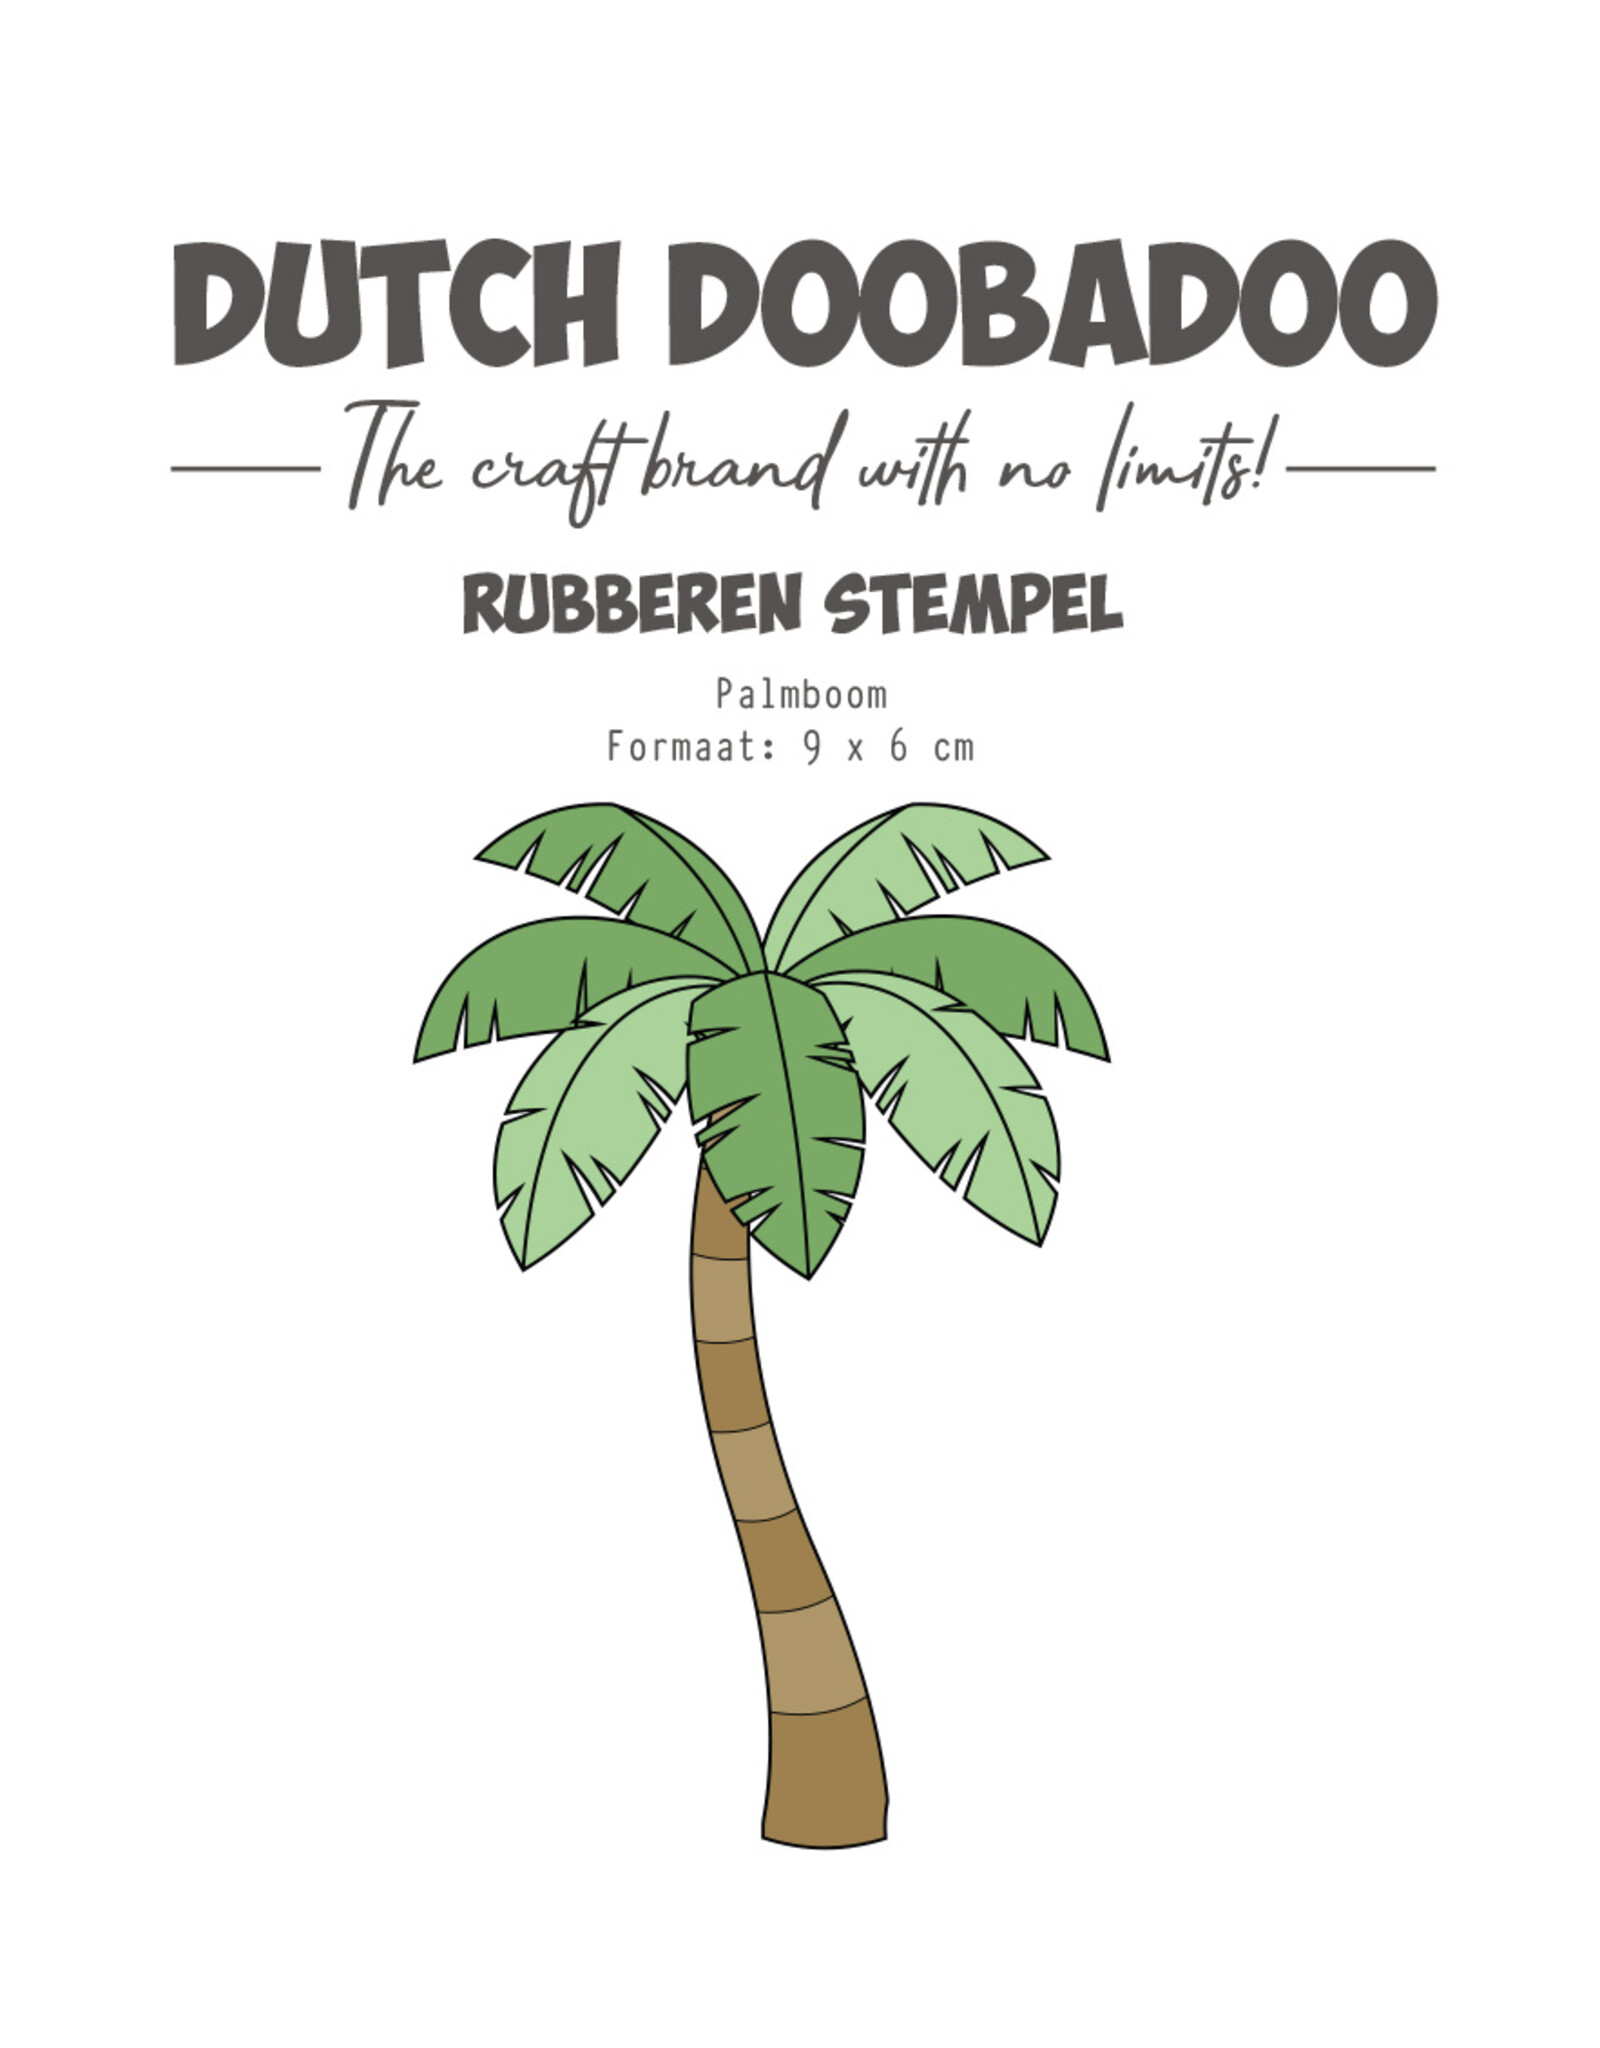 Dutch Doobadoo DDBD Rubber stempel Palmboom